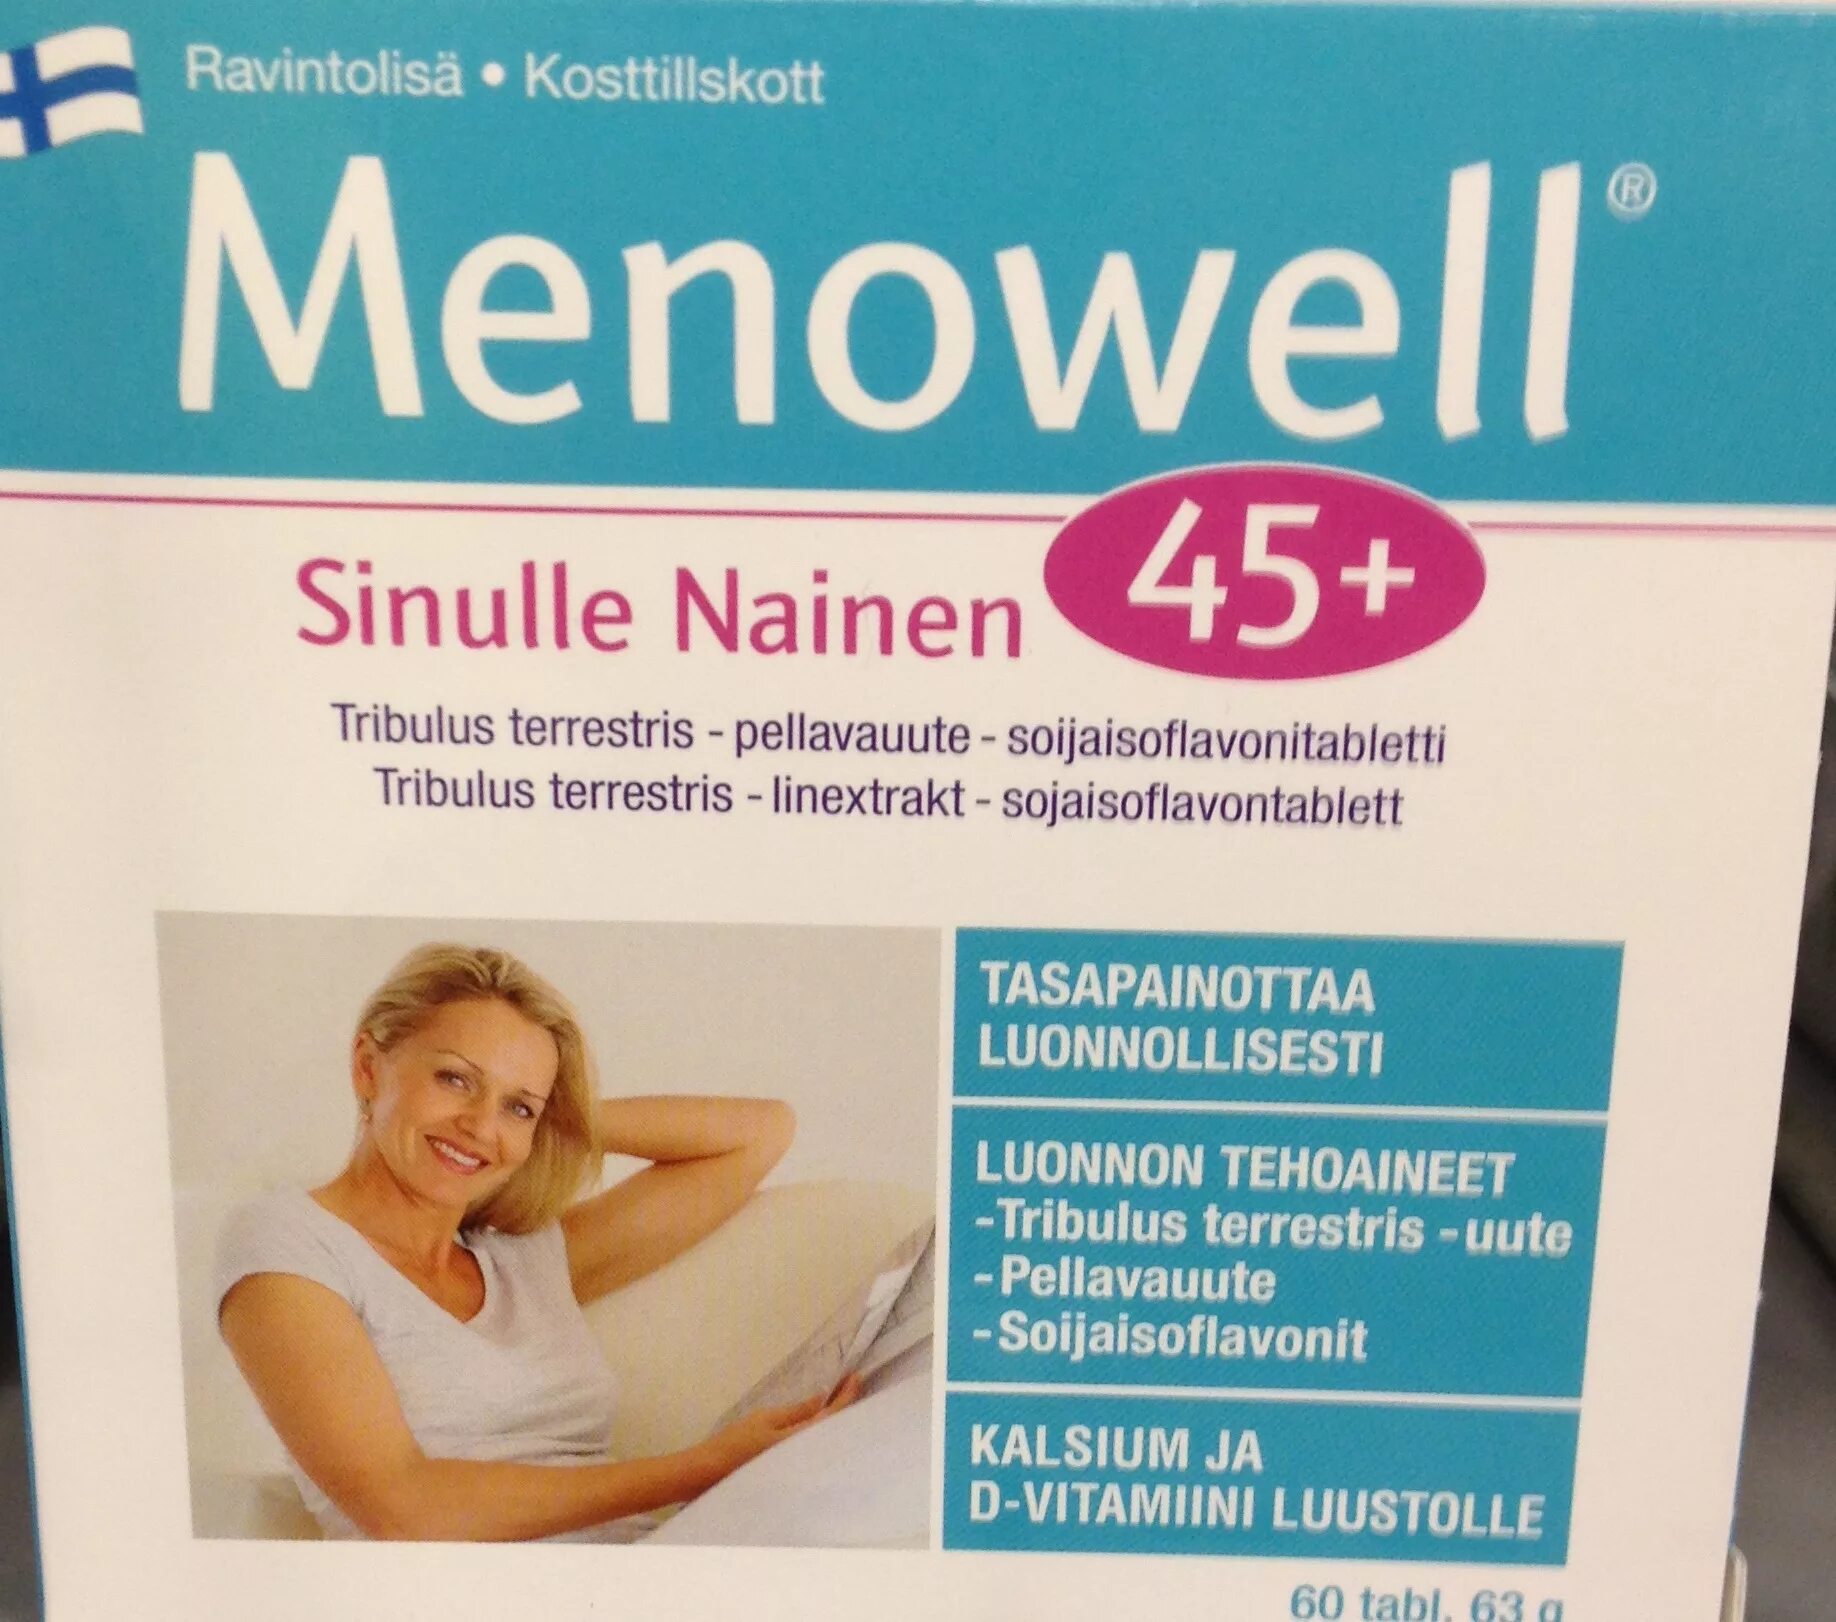 Витамины менопауза купить. Витамины Menowell 45+. Менопауза витамины menopause. Витамины из Финляндии 45+. Женские витамины финские.